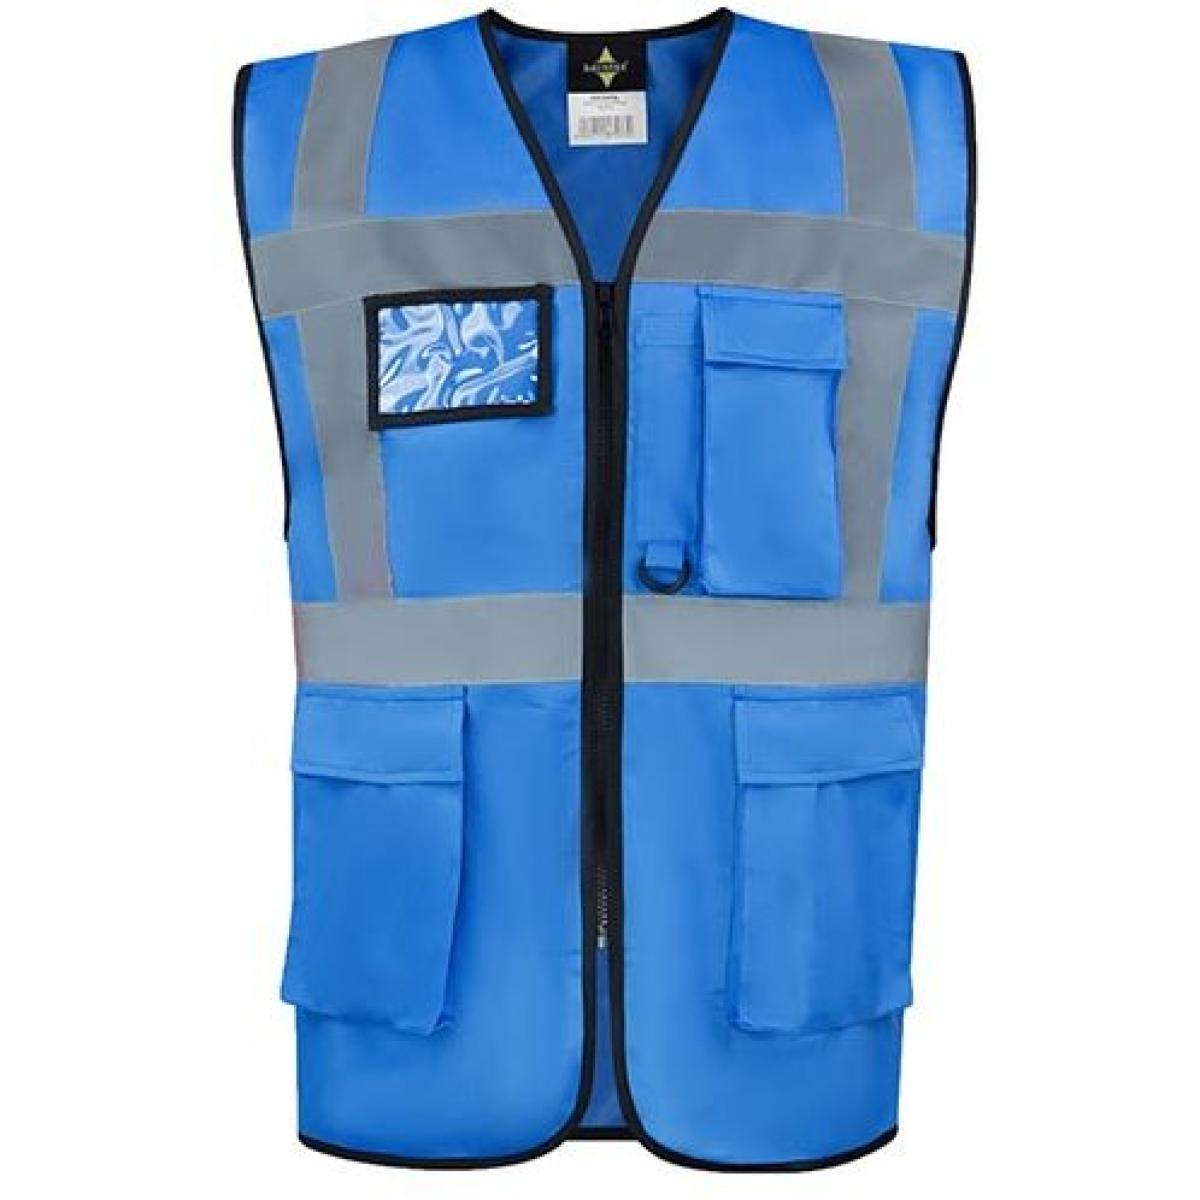 Hersteller: Korntex Herstellernummer: KXCMF Artikelbezeichnung: Comfort Executive Multifunctional Safety Vest Hamburg Farbe: Sky Blue